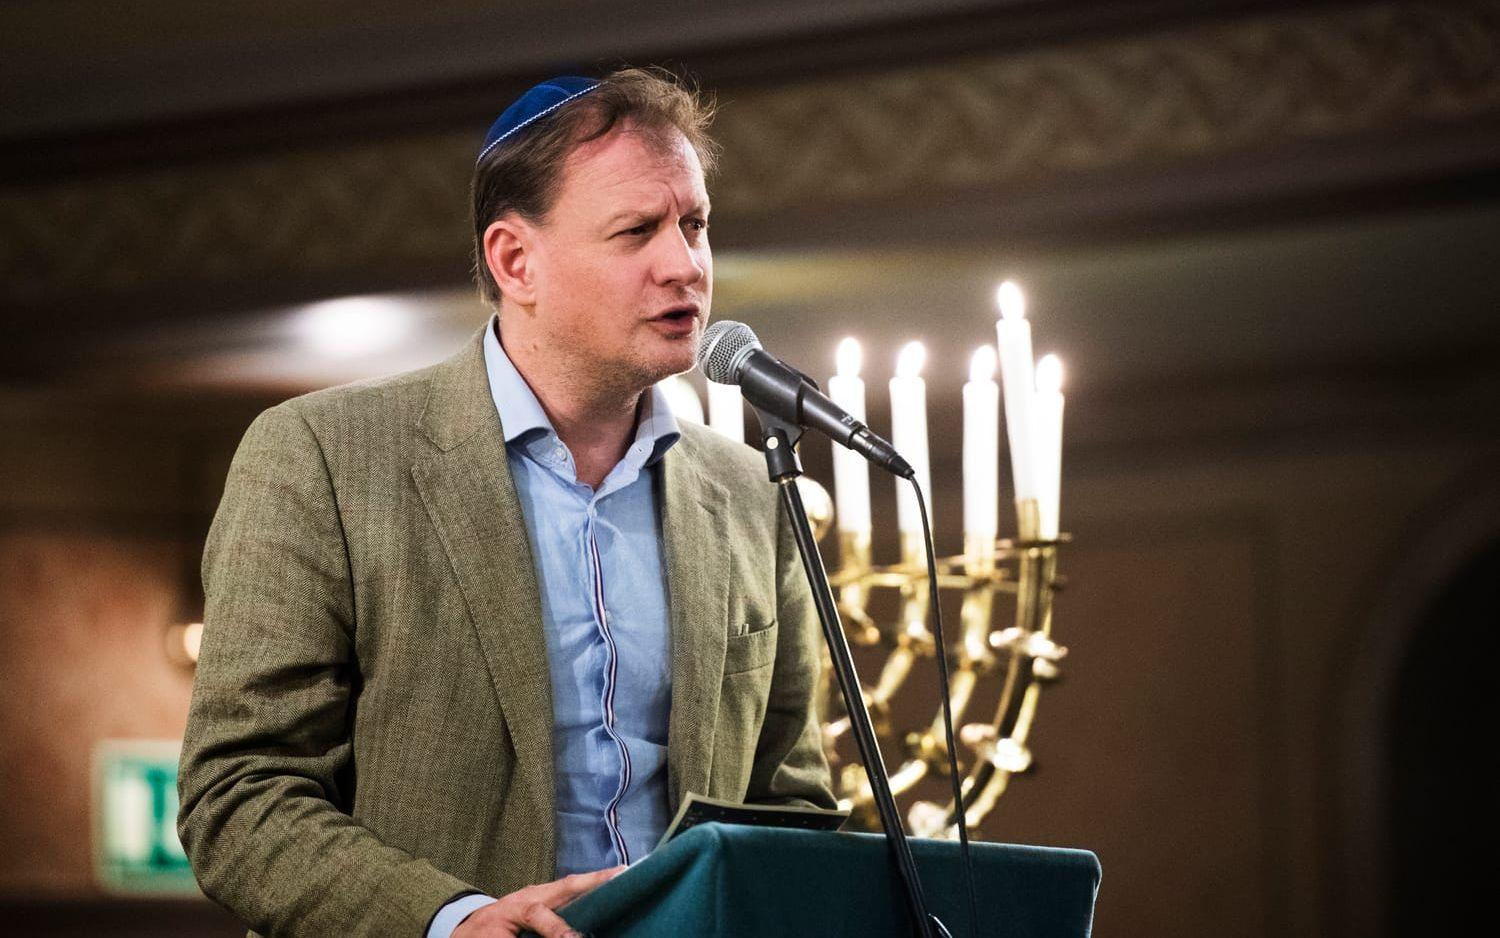 Riksdagsmannen Carl Schlyter berättade att riksdagen haft en intensiv debatt om hur antisemitismen ska stävjas.